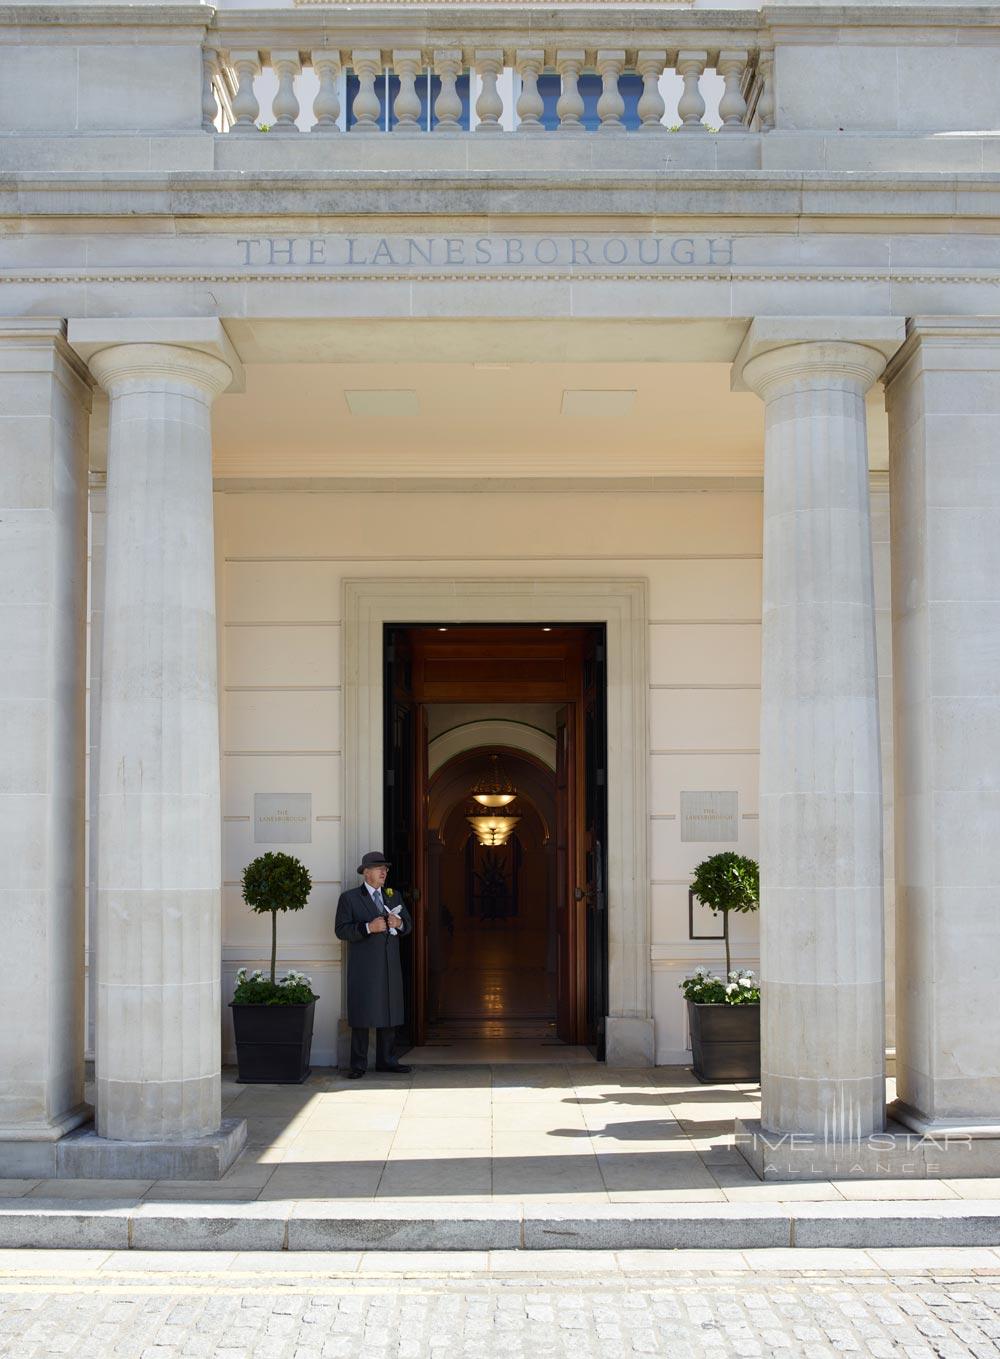 Entrance to The Lanesborough, London, UK